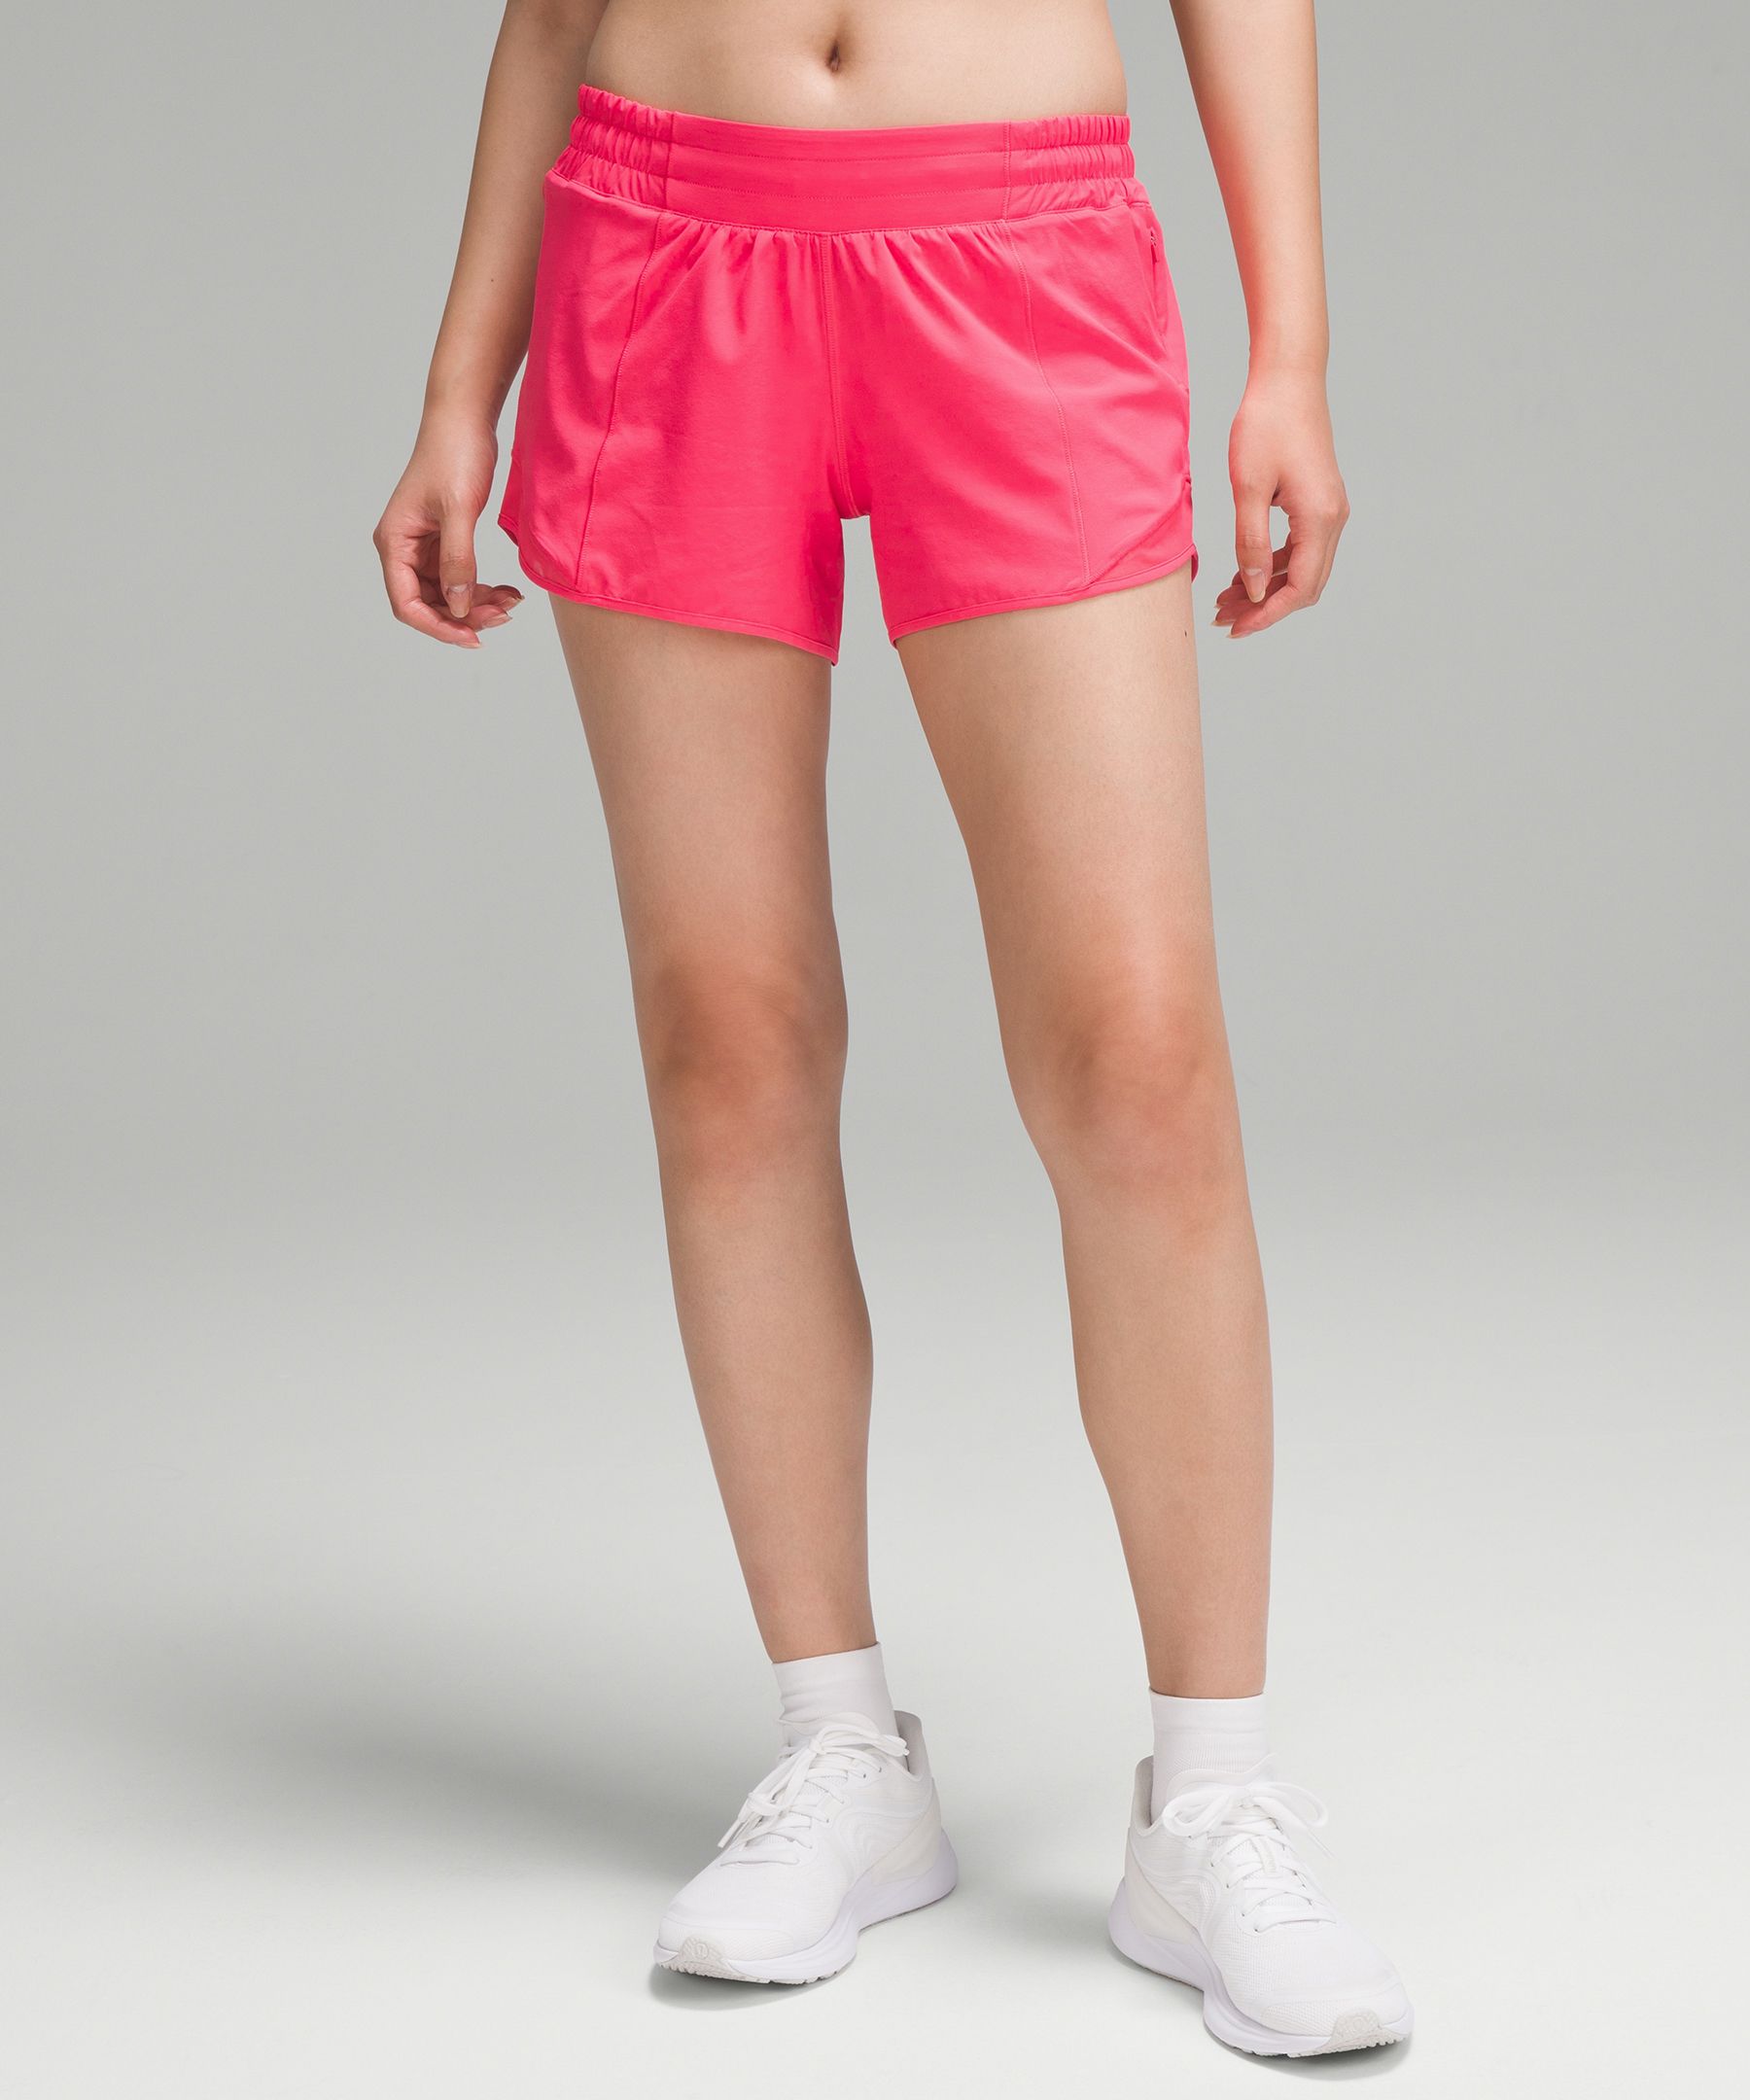 Lululemon shorts size 12 - Shorts - Ottawa, Ontario, Facebook Marketplace